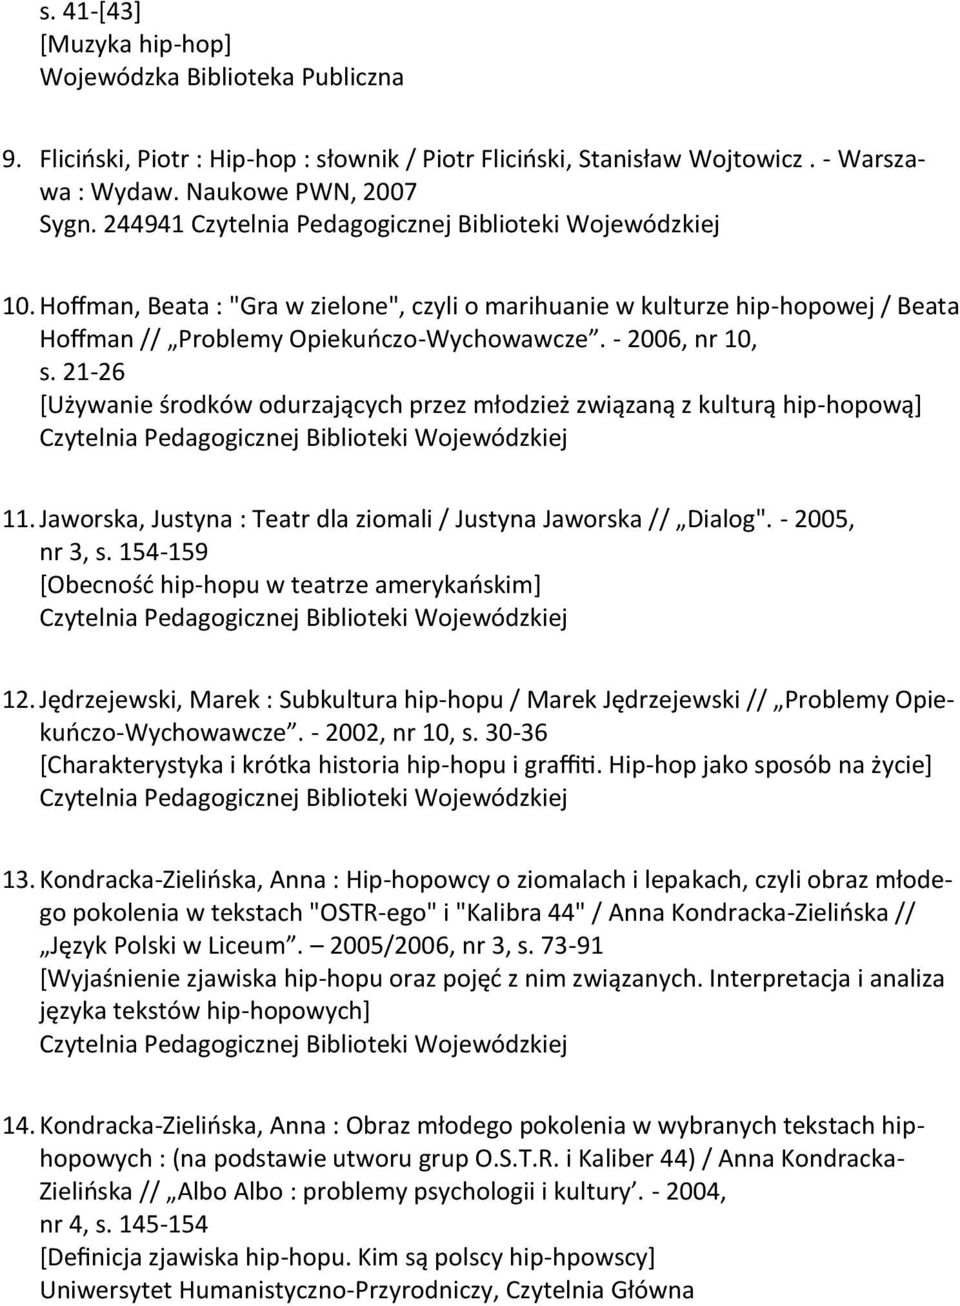 21-26 *Używanie środków odurzających przez młodzież związaną z kulturą hip-hopową+ 11. Jaworska, Justyna : Teatr dla ziomali / Justyna Jaworska // Dialog". - 2005, nr 3, s.